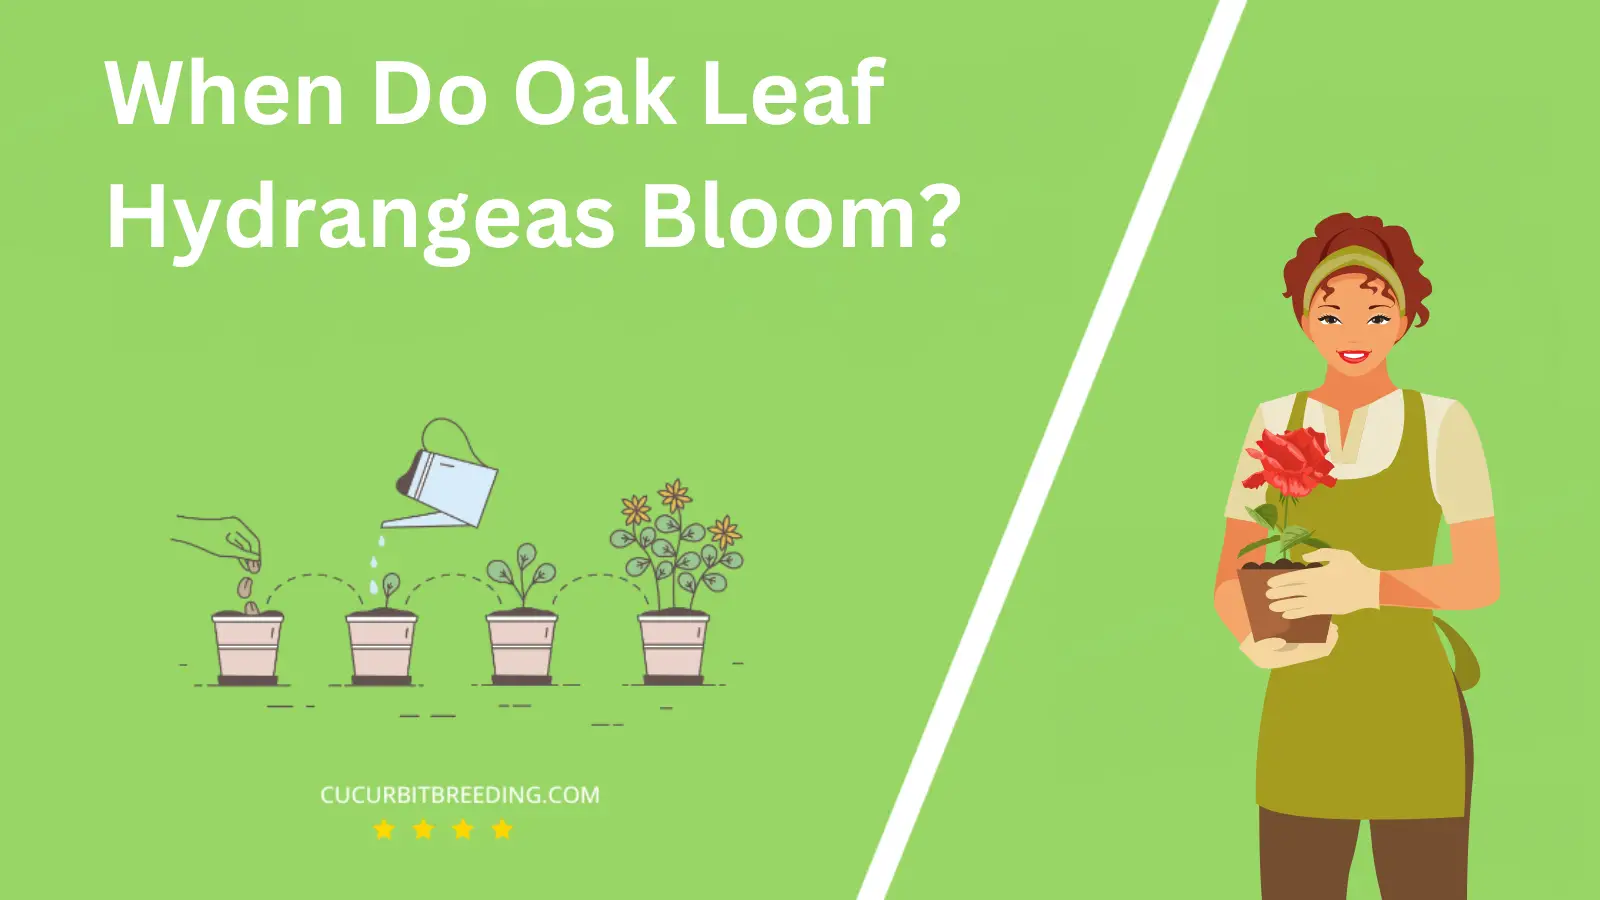 When Do Oak Leaf Hydrangeas Bloom?